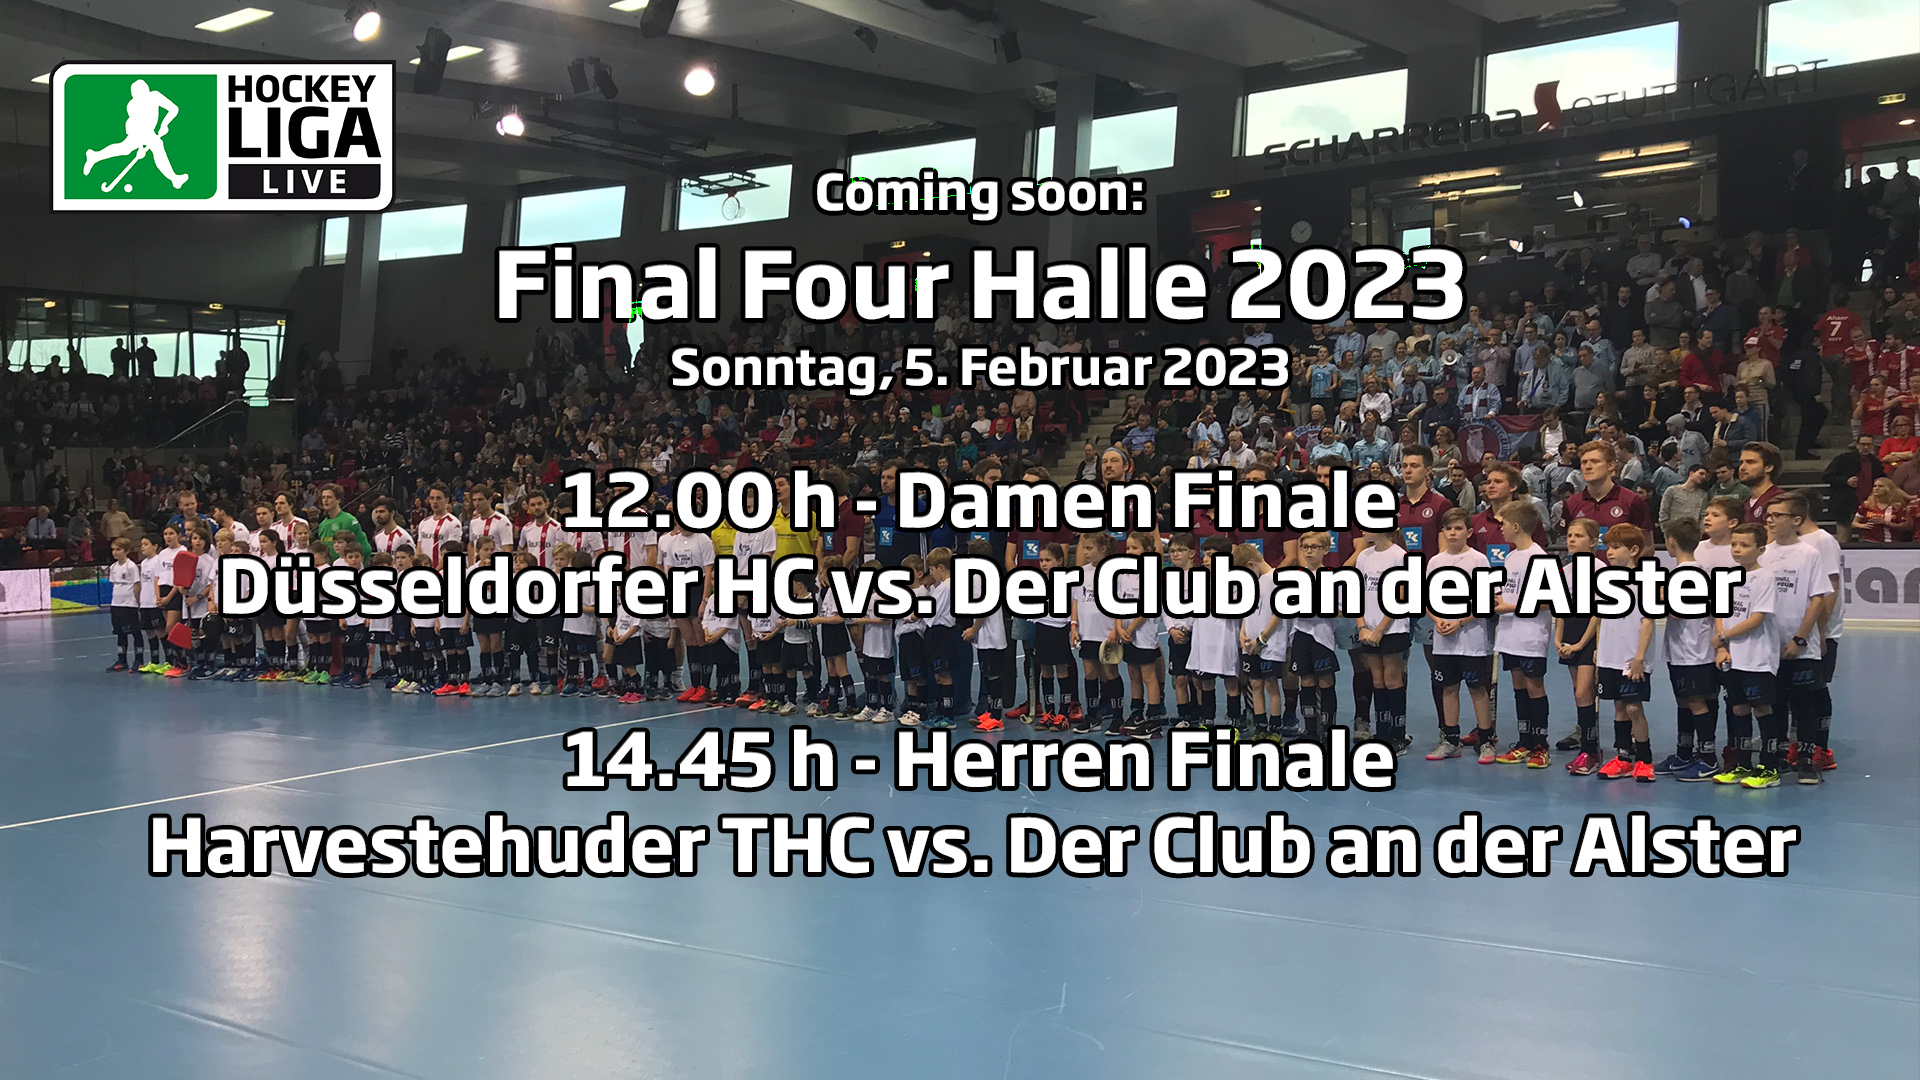 Final Four – Finalspiele – Deutsche-Hallenhockey-Meisterschaft 2023 – 05.02.2023 ab 1100 h – Hockeyliga Live